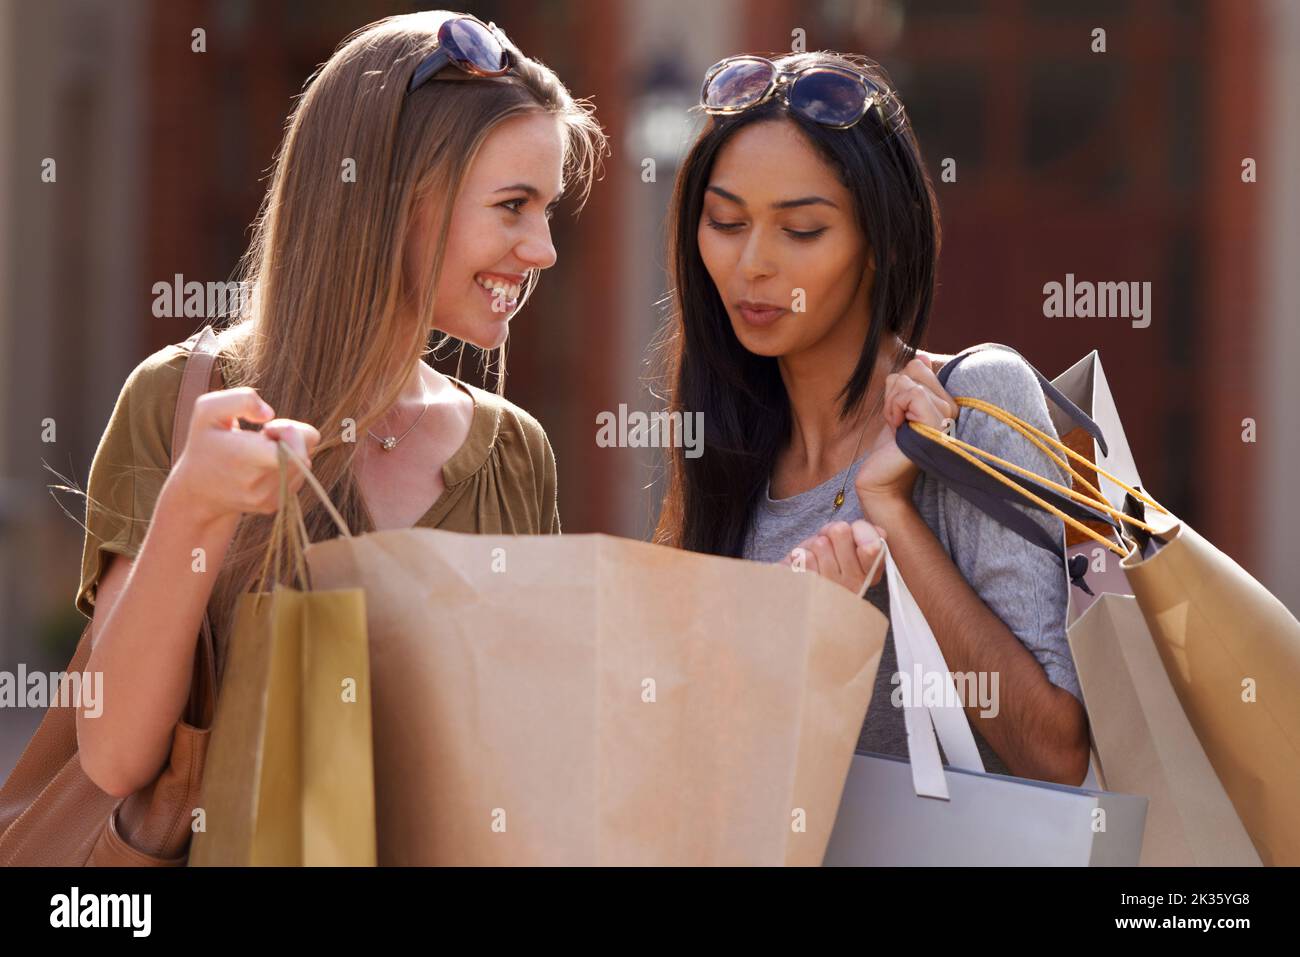 Sie freuen sich auf das gemeinsame Einkaufen. Zwei attraktive junge Frau mit ihren Einkaufstaschen nach einem Tag der Verkaufstherapie. Stockfoto